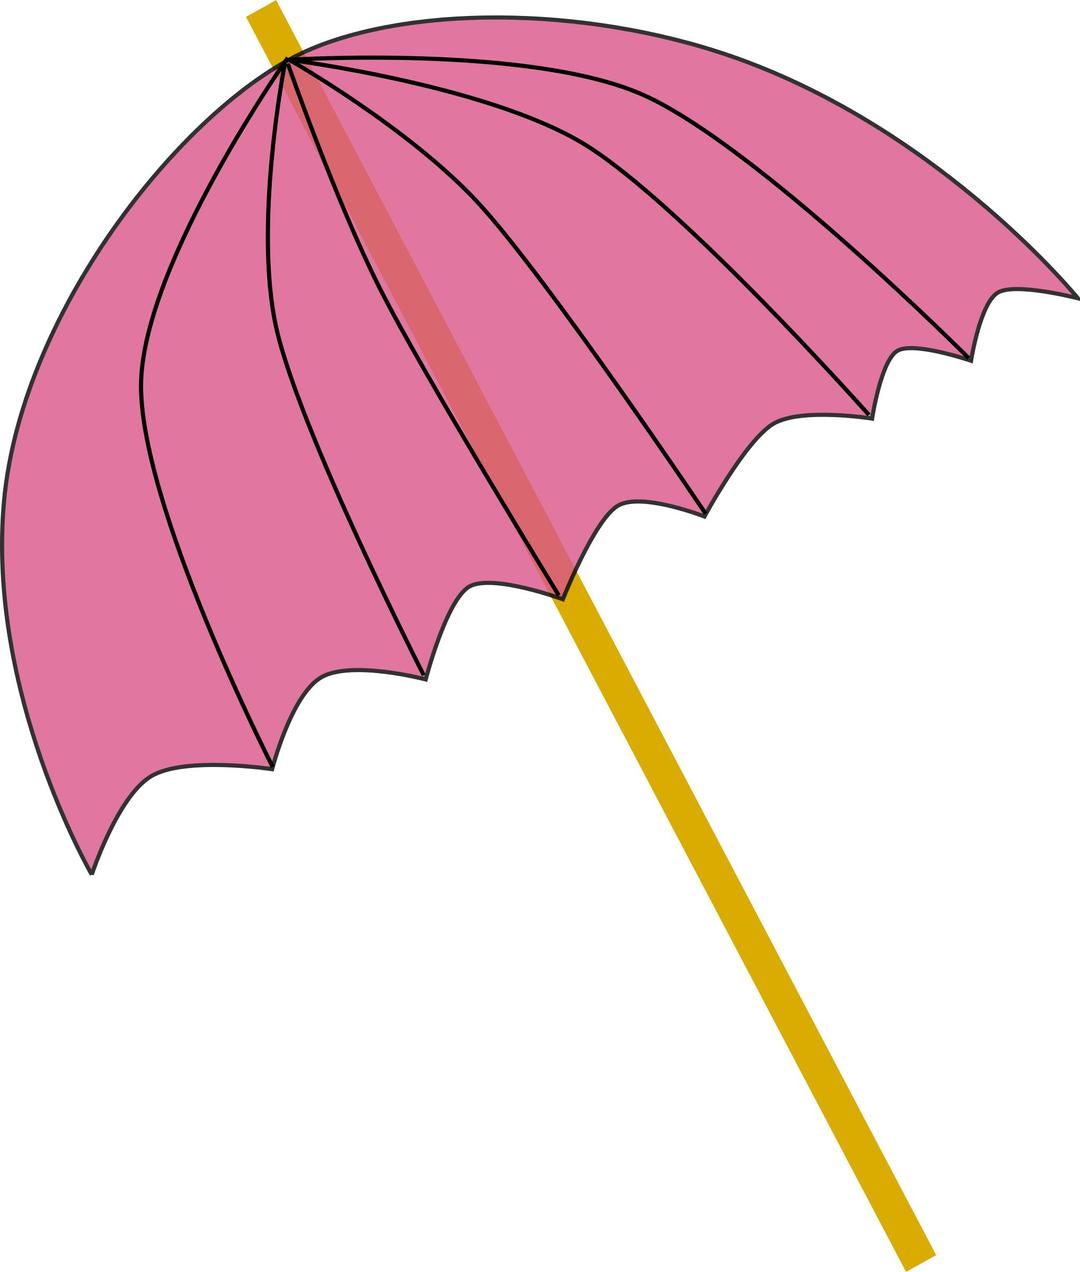 Umbrella / Parasol pink tranparent png transparent